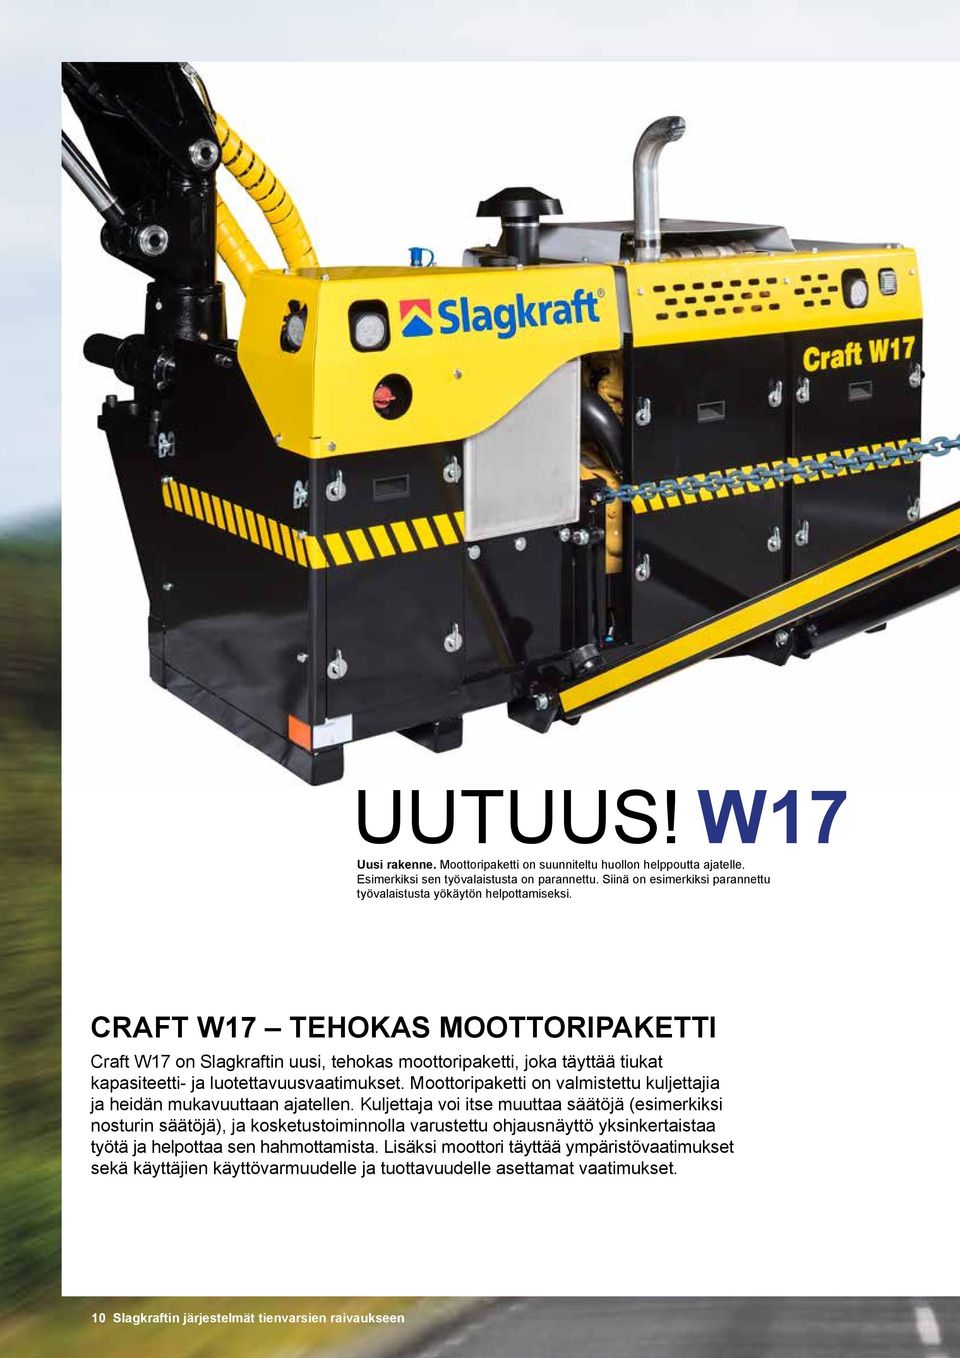 CRAFT W17 TEHOKAS MOOTTORIPAKETTI Craft W17 on Slagkraftin uusi, tehokas moottoripaketti, joka täyttää tiukat kapasiteetti- ja luotettavuusvaatimukset.